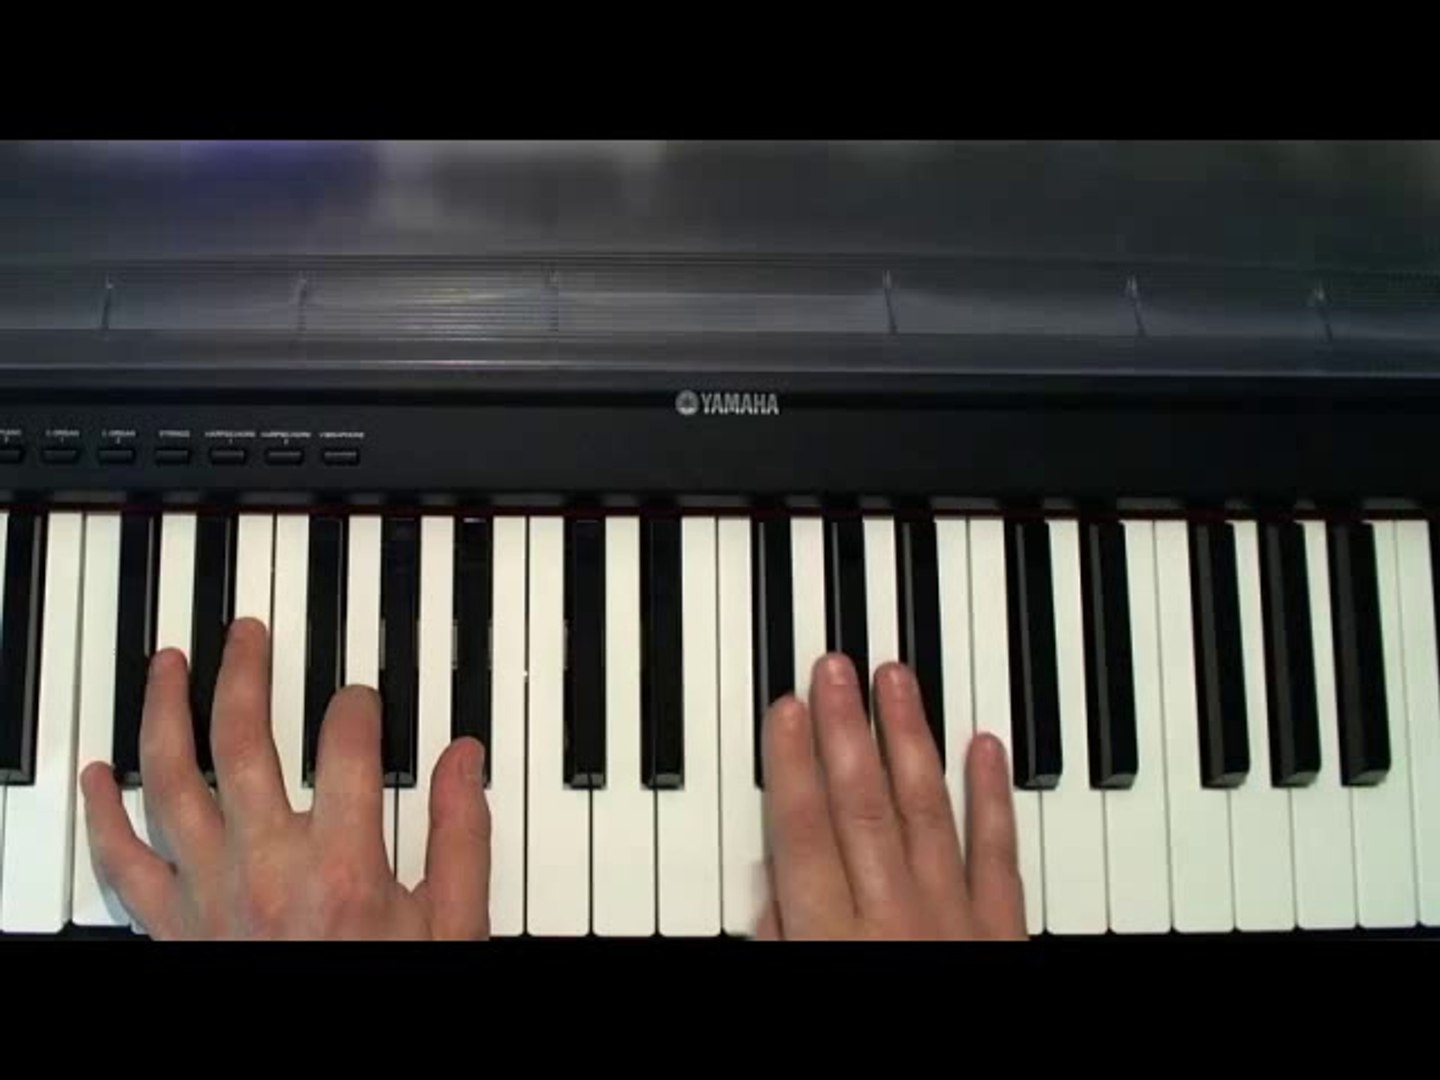 La scala di blues - Corso di pianoforte gratis (Lezione 18) - Video  Dailymotion